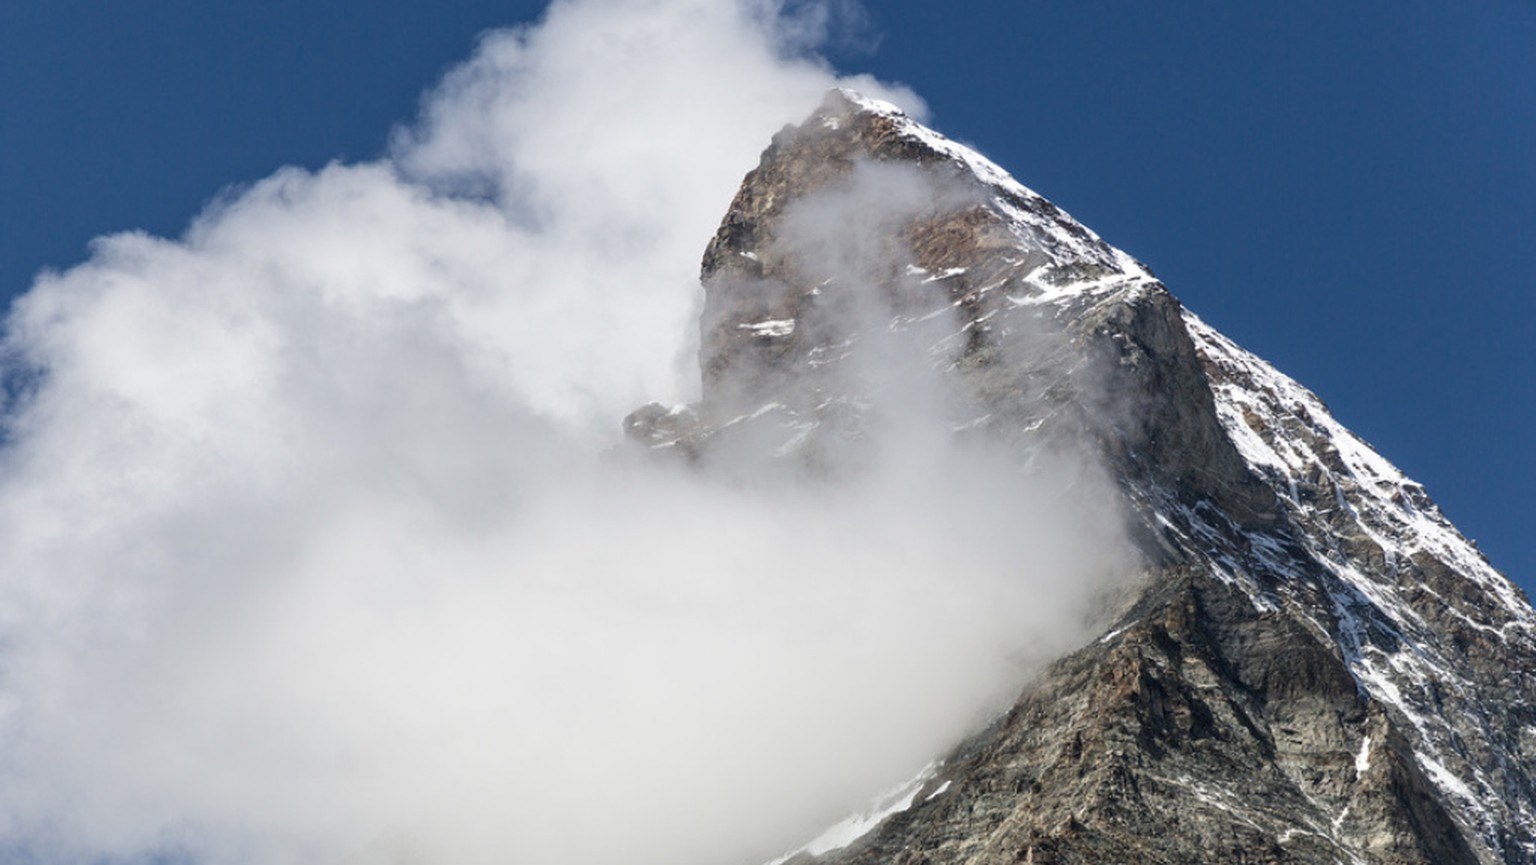 Ein britischer Bergsteiger ist am Matterhorn in den Tod gestürzt. Der 24-Jährige wurde beim Abstieg auf dem Hörnligrat von einem Felsblock mitgerissen. (Archivbild)